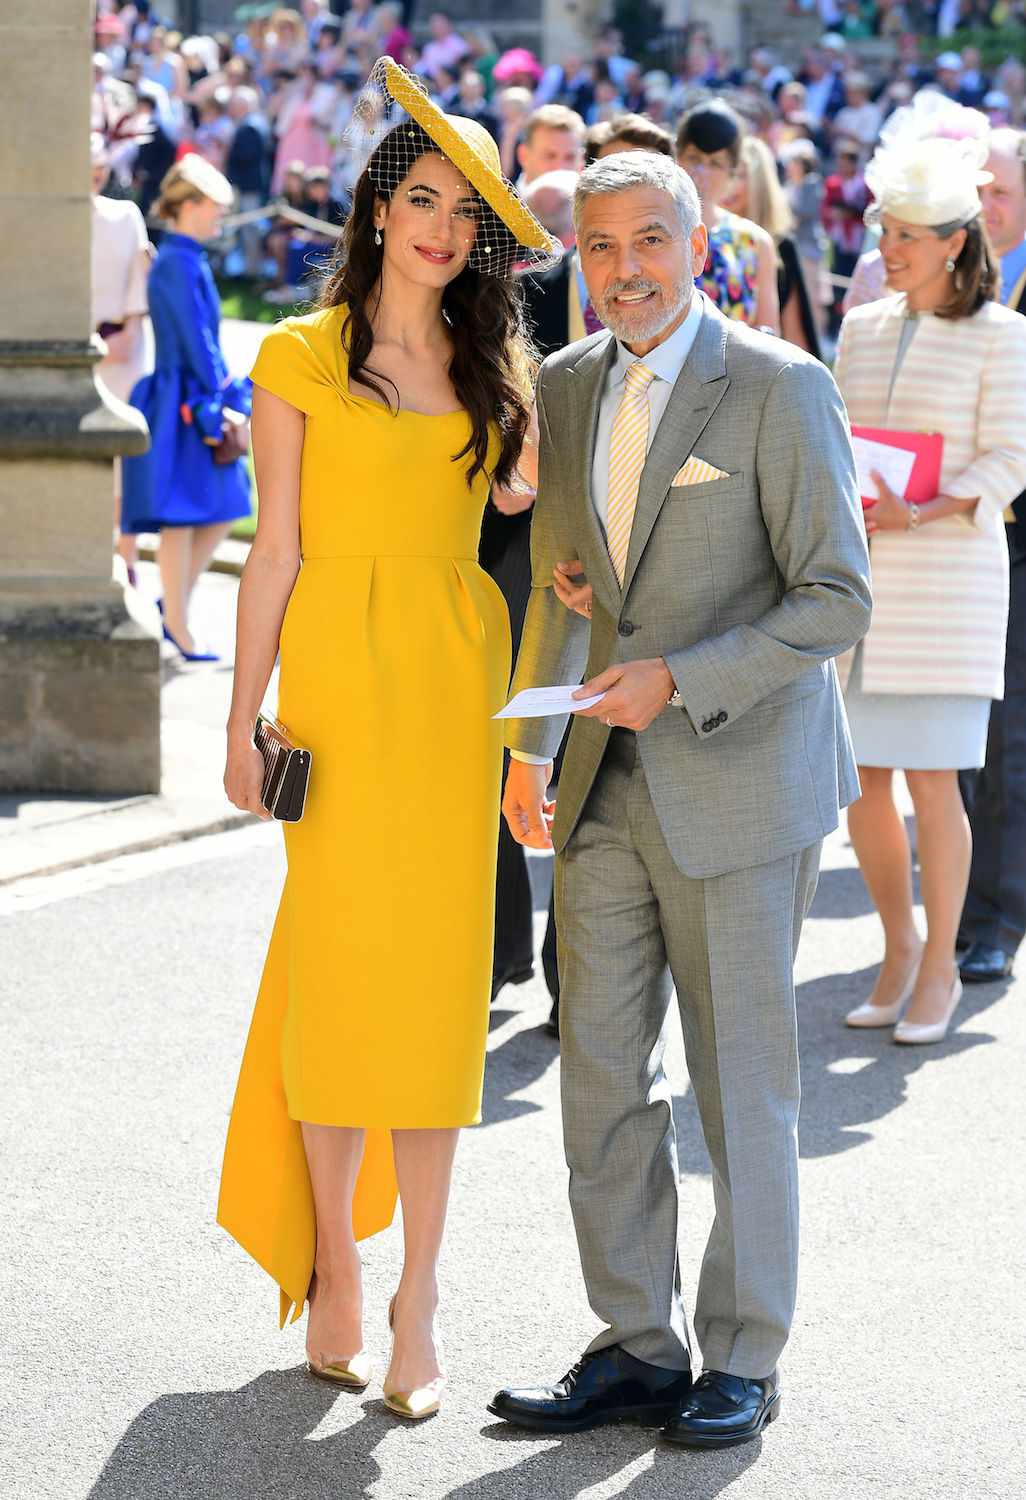 Джордж Клуни с супругой в мини-платье попали в объективы фотографов в Венеции. Топ стильных образов Амаль Клуни